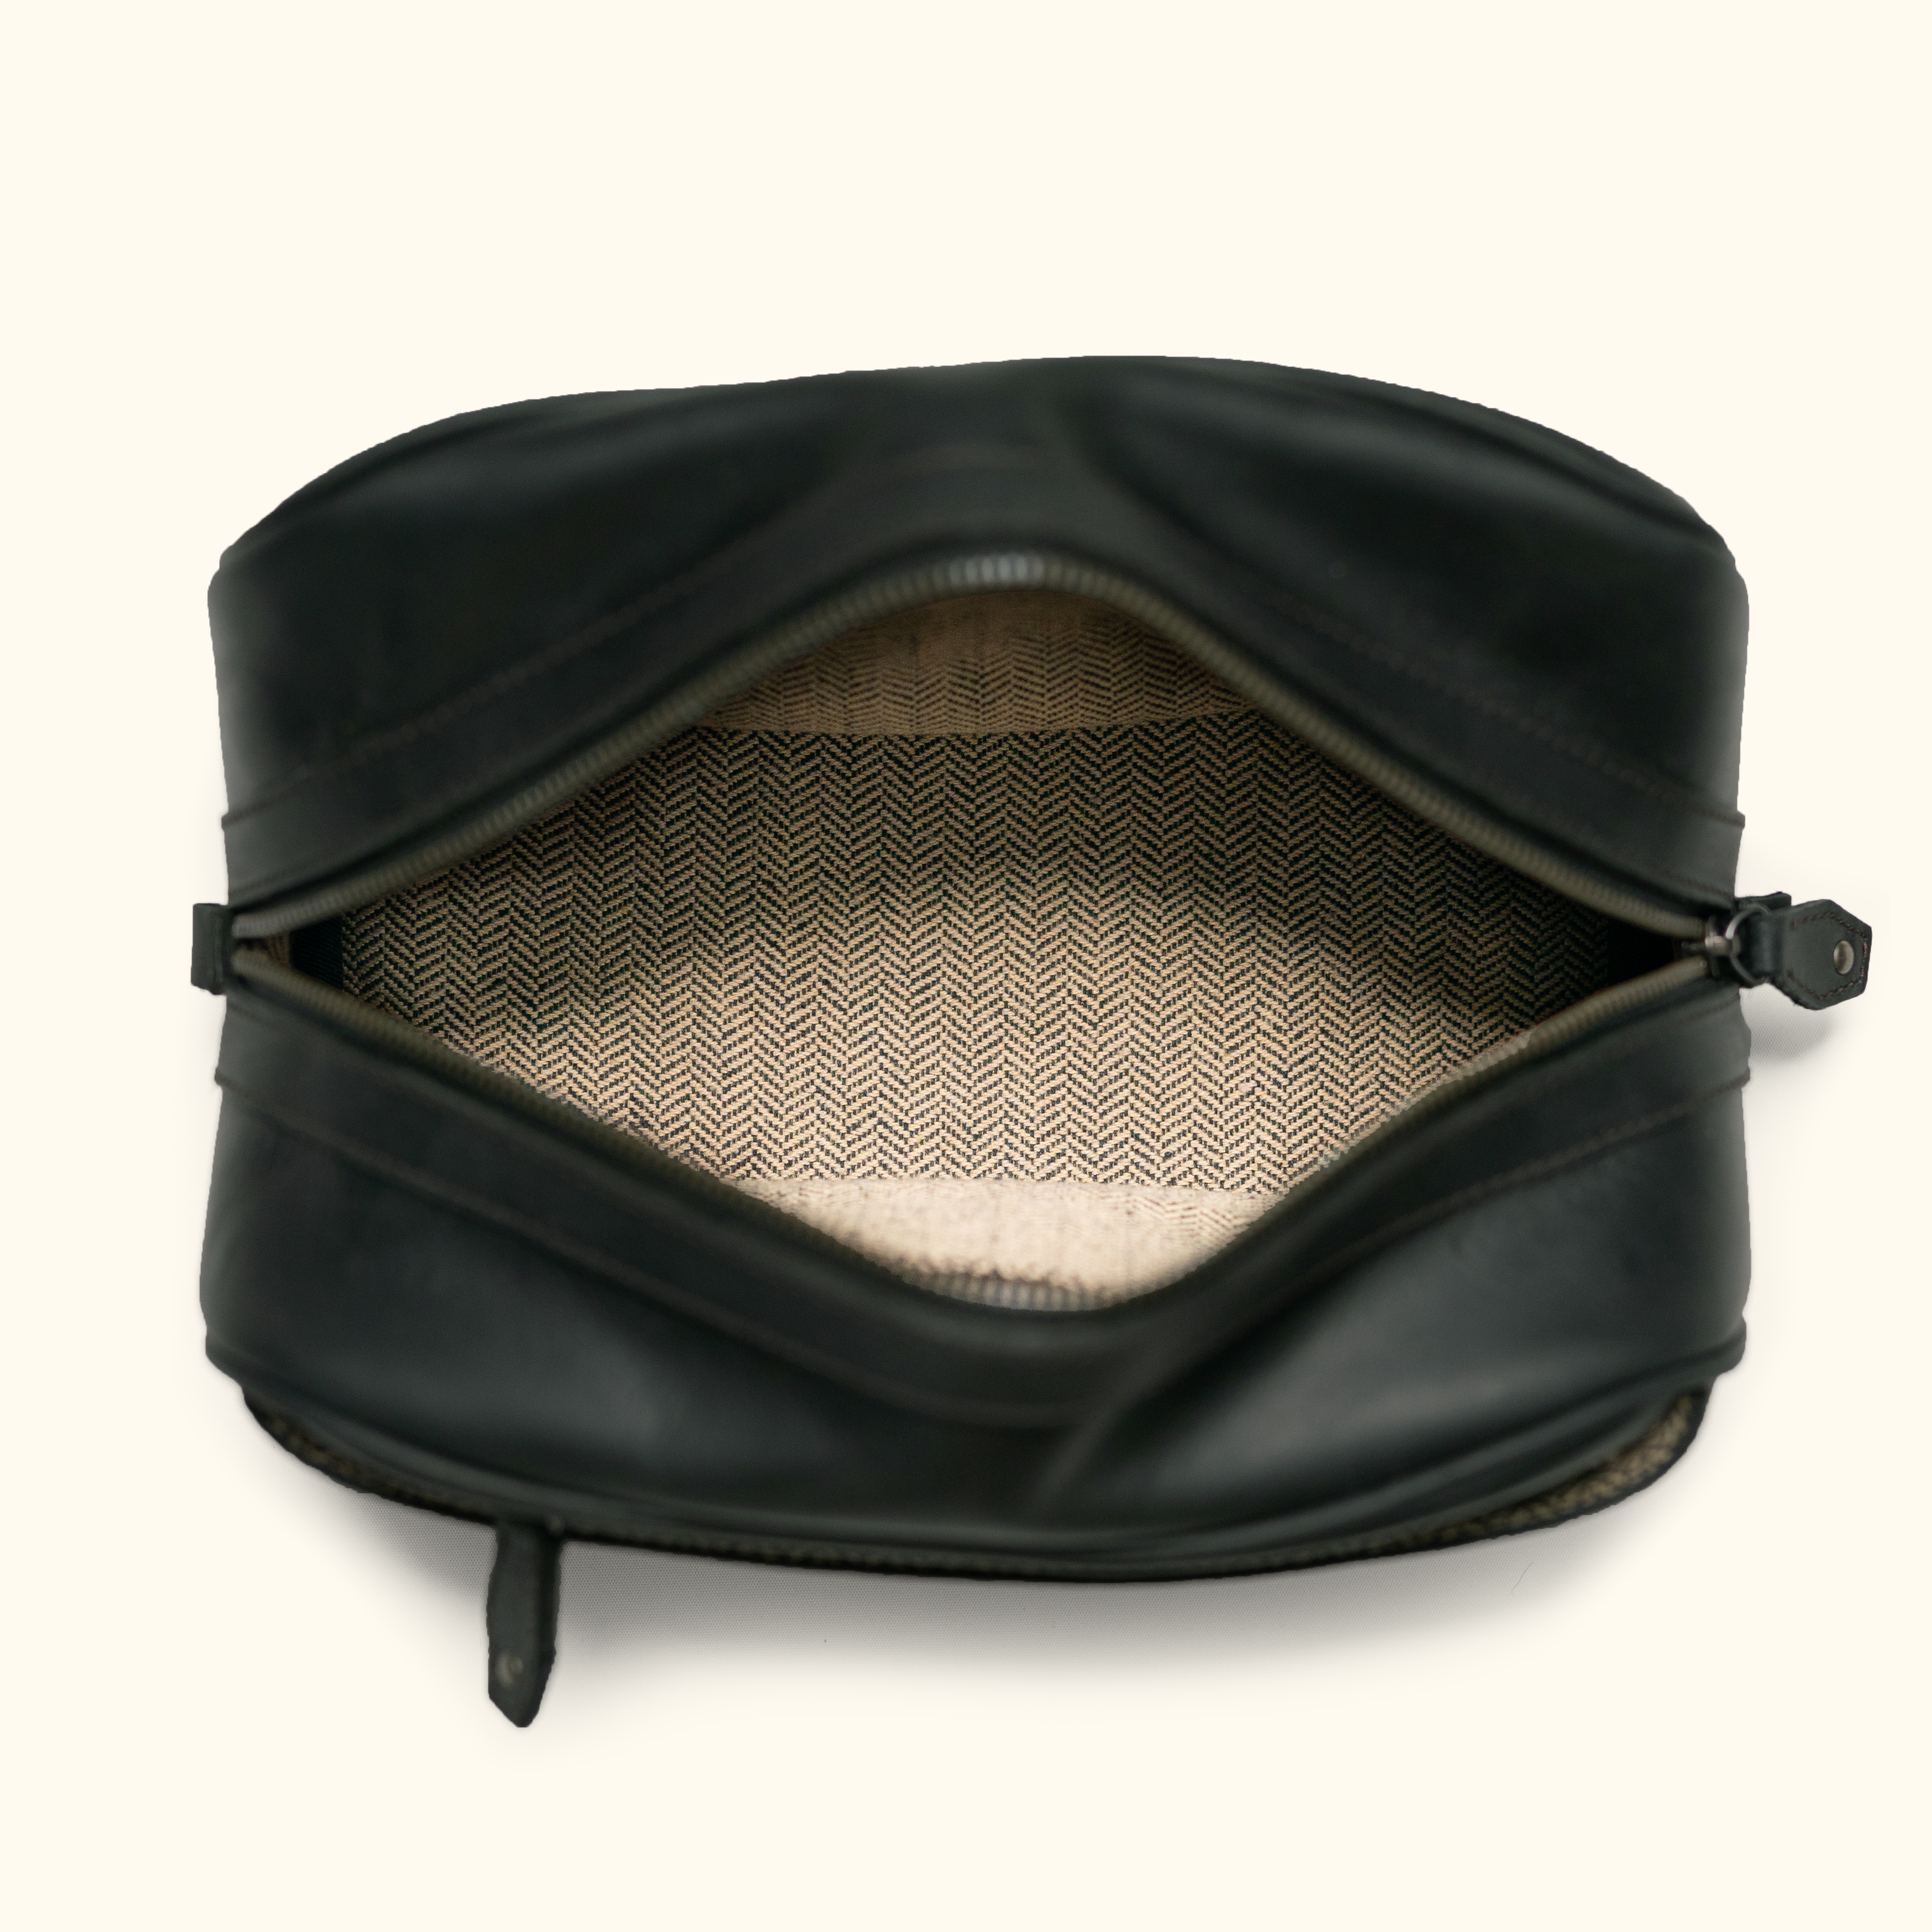 Jefferson Leather Dopp Kit | Elderwood